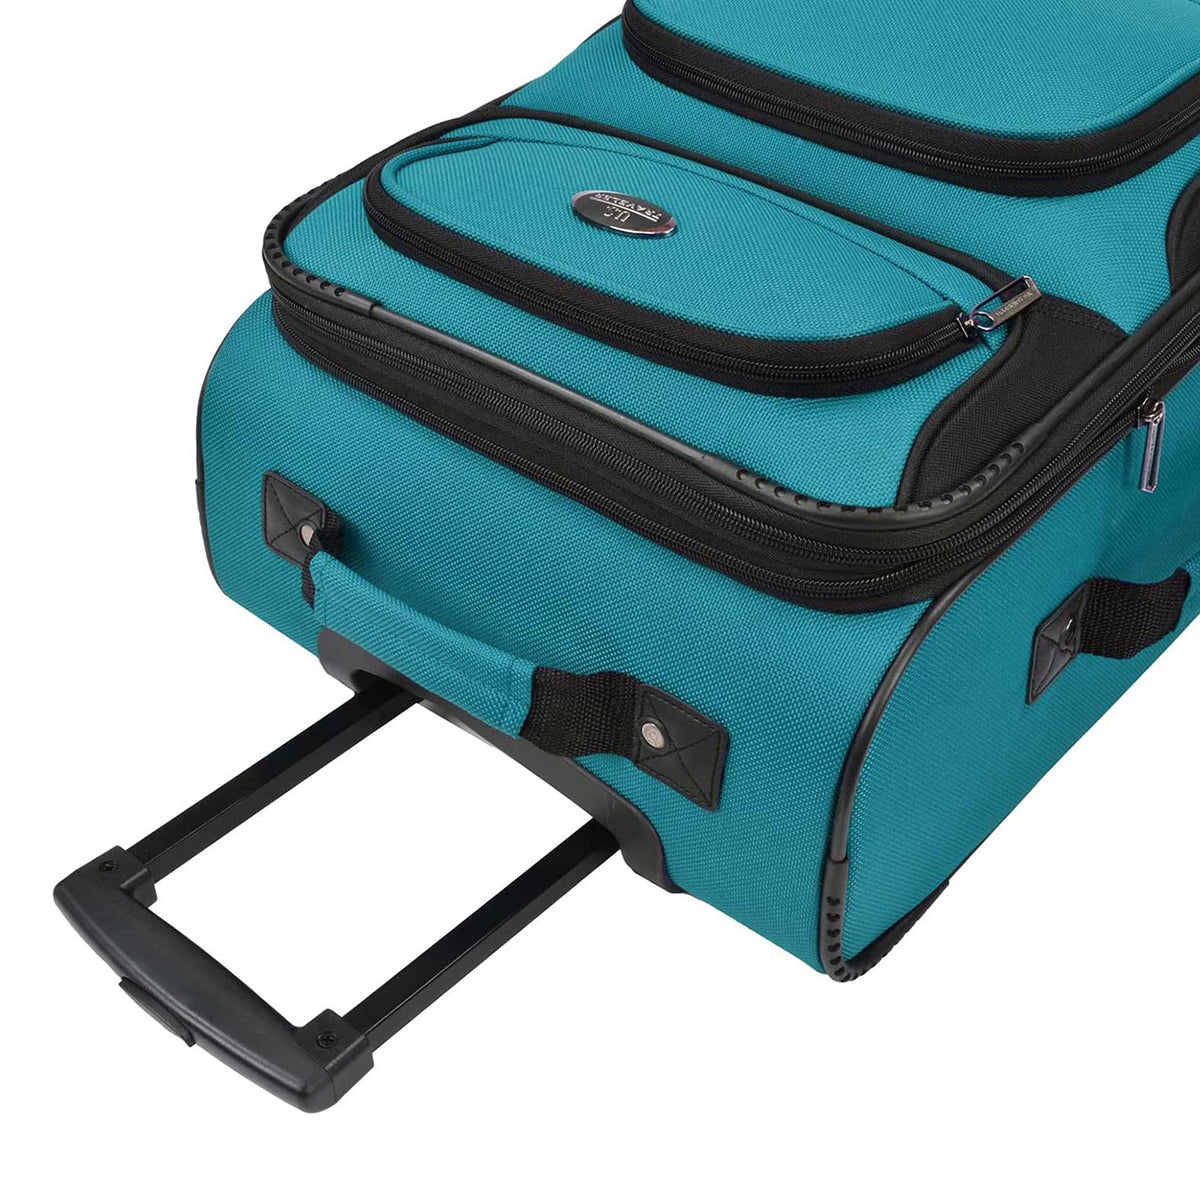 U.S. Traveler Rugged Fabric Expandable Carry-on Luggage Set, 4 Wheel